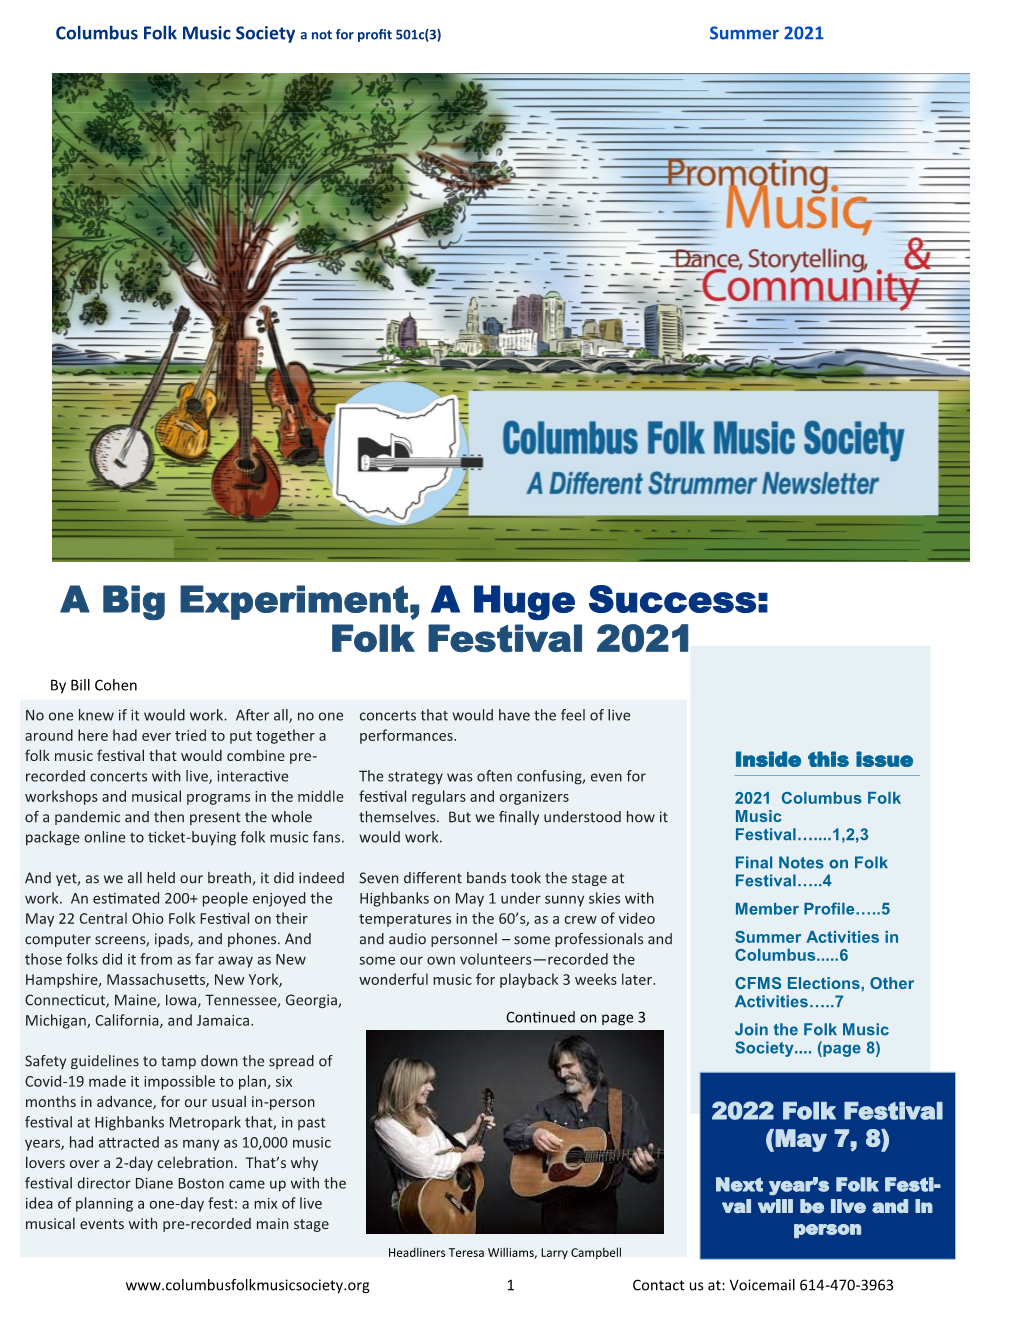 Folk Festival 2021